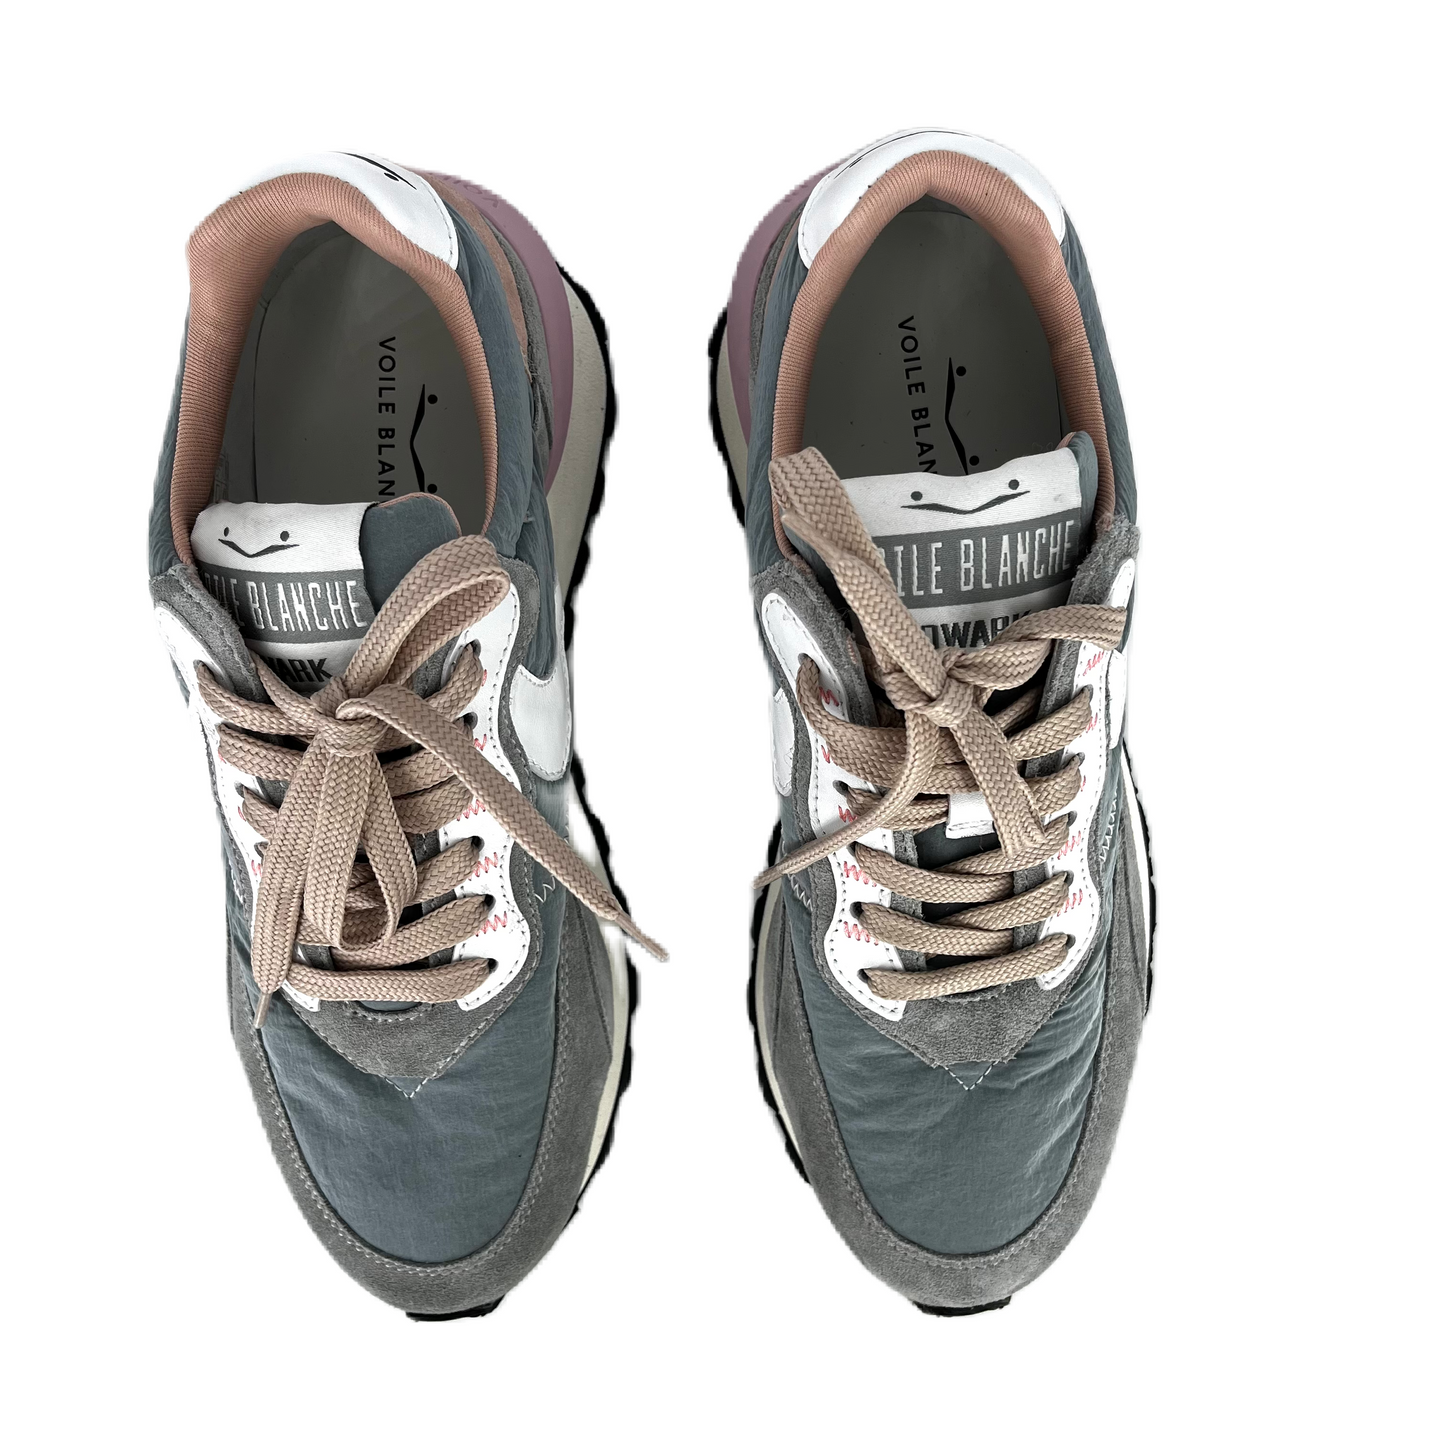 Sneakers De La Marca Voile Blanche Modelo Qwark Hype Suede/Nylon Sage Dark Gray